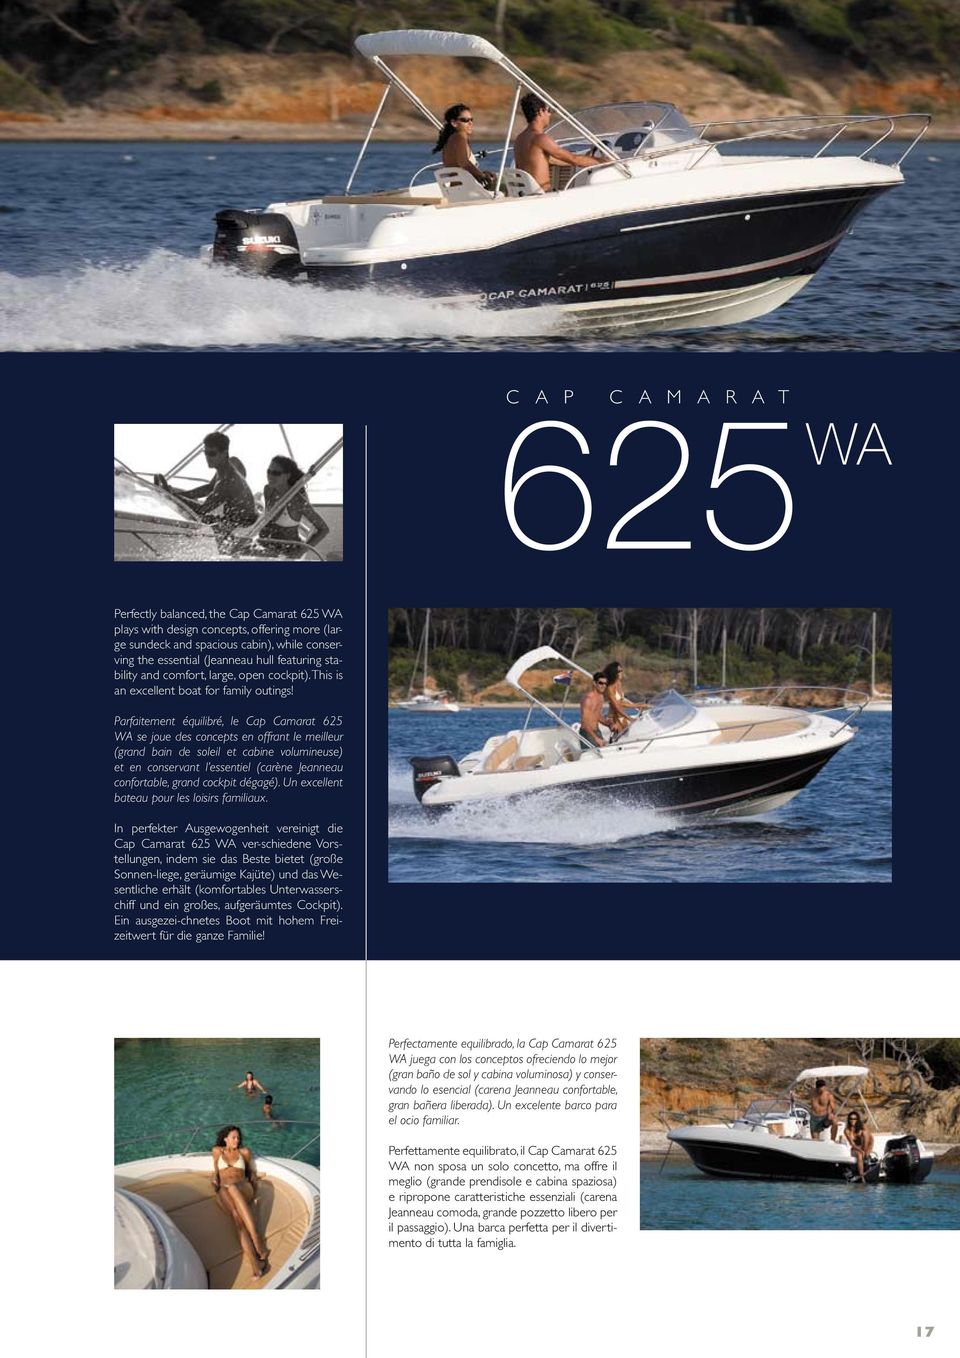 Parfaitement équilibré, le Cap Camarat 625 WA se joue des concepts en offrant le meilleur (grand bain de soleil et cabine volumineuse) et en conservant l essentiel (carène Jeanneau confortable, grand